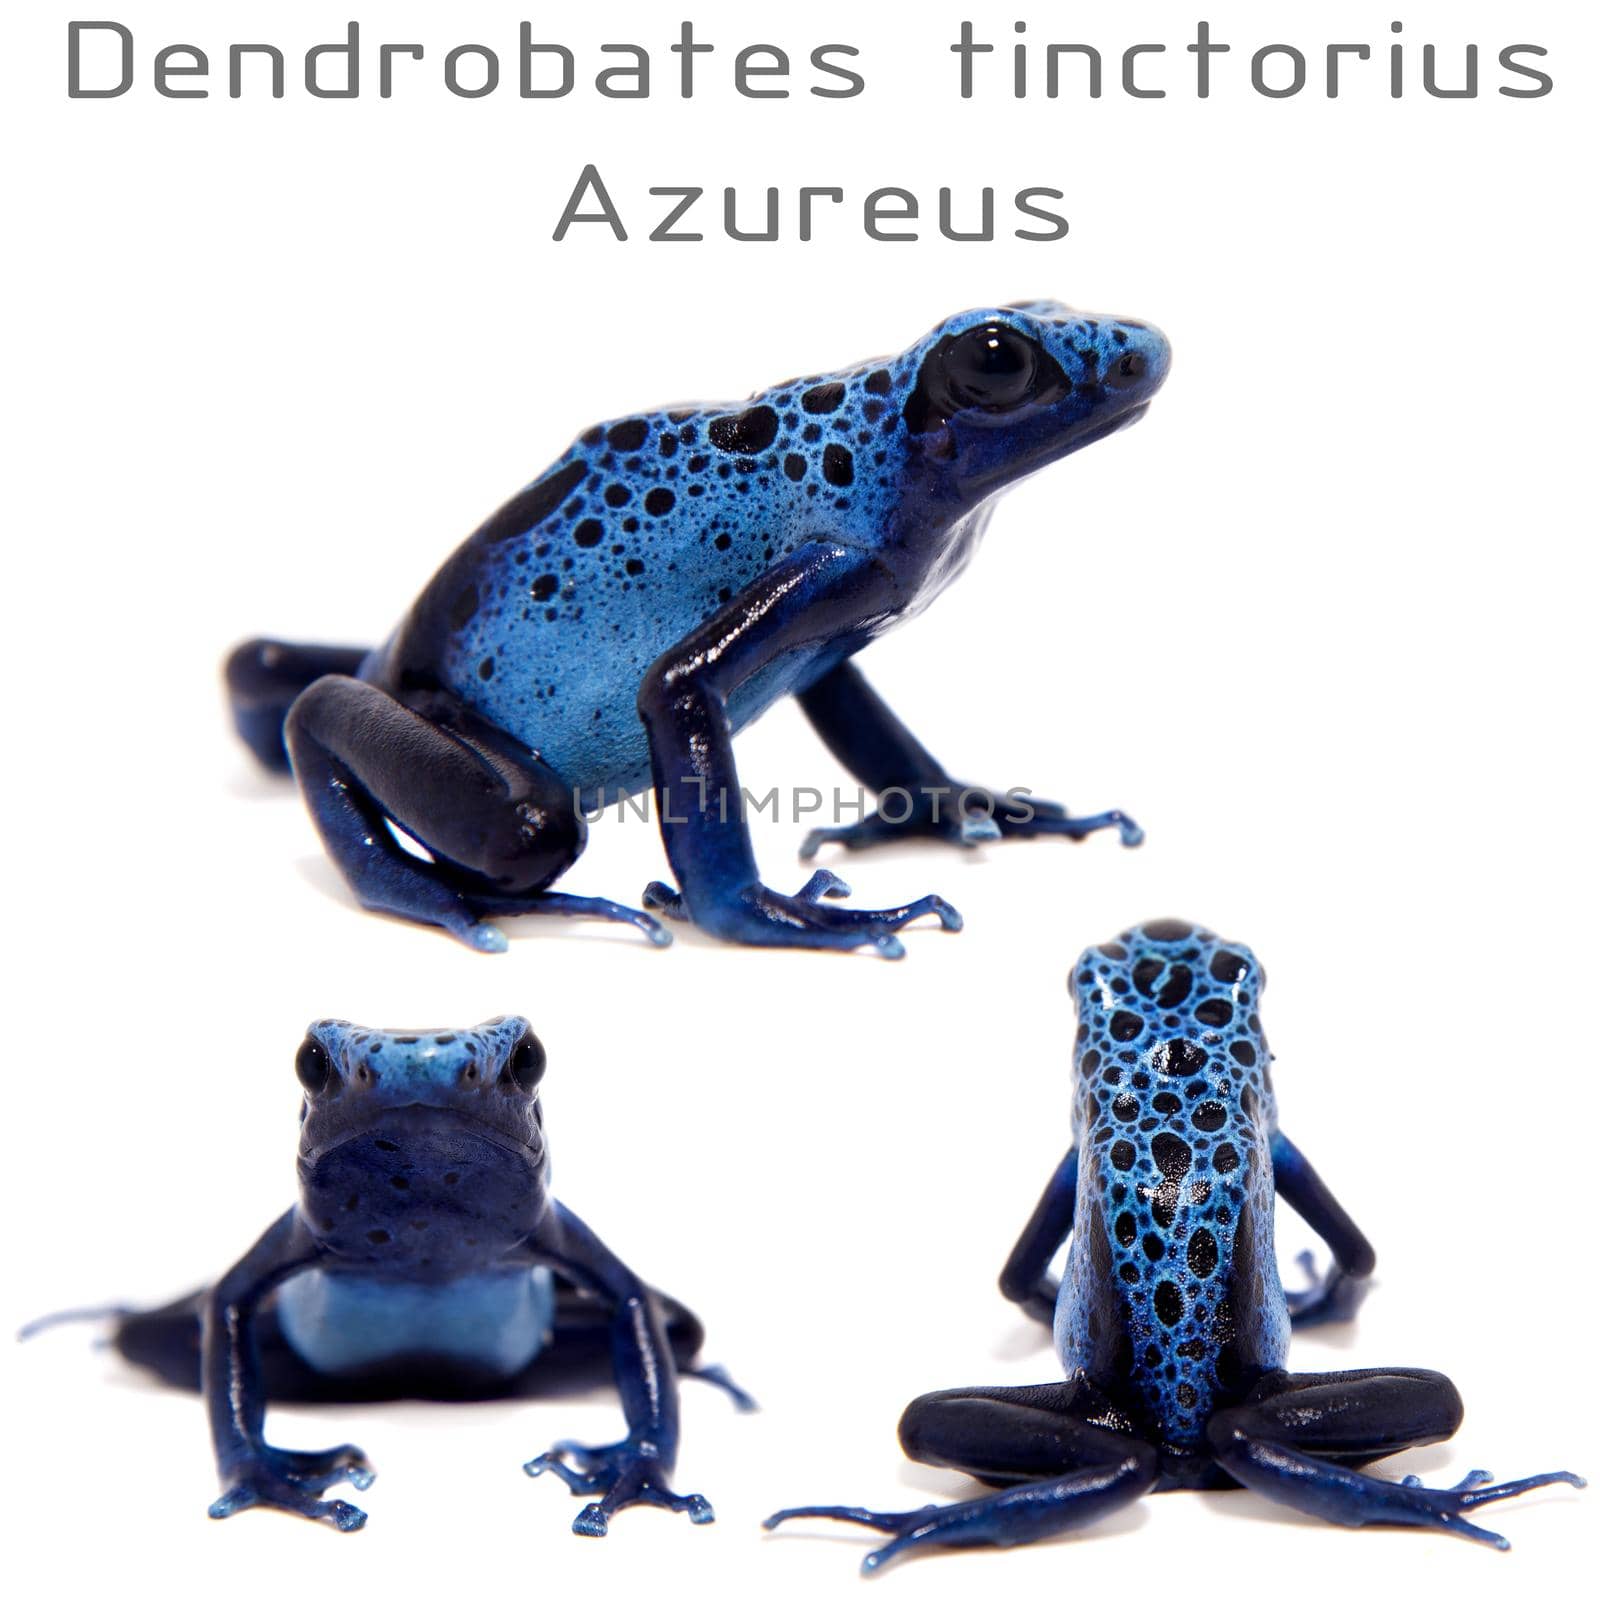 Blue Poison dart frog, Dendrobates tinctorius Azureus, on white by RosaJay